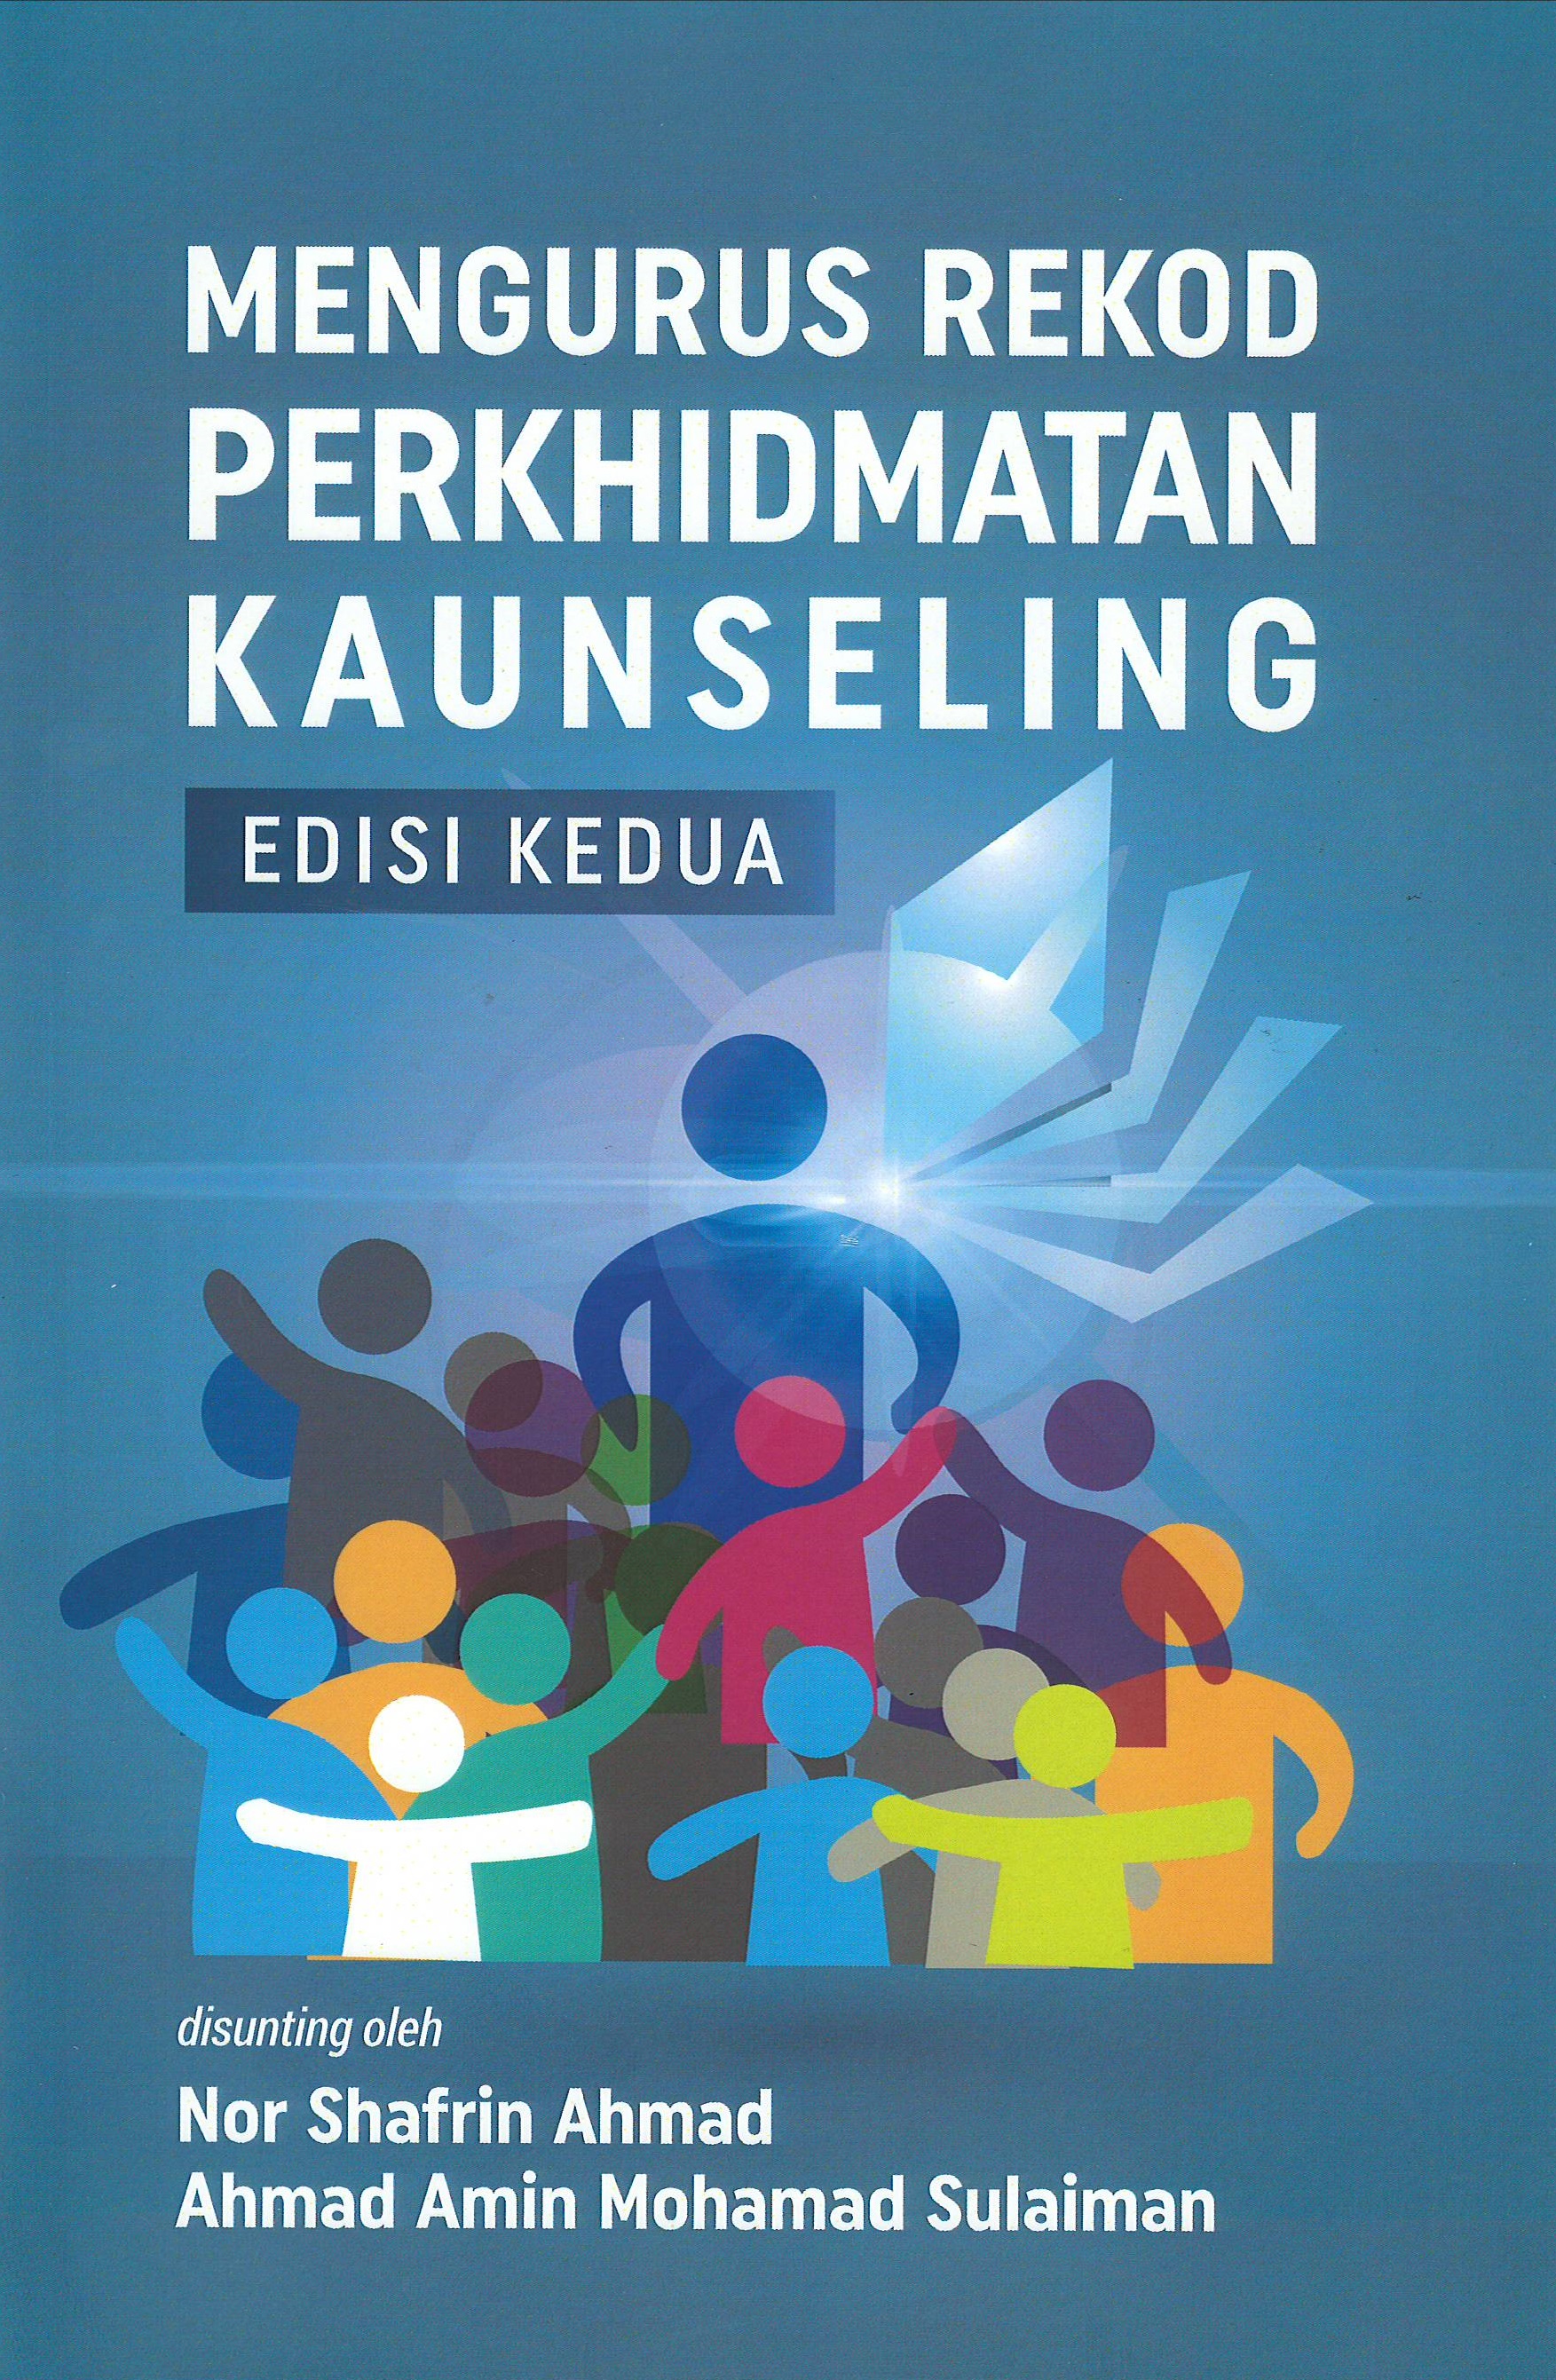 Mengurus Rekod Perkhidmatan Kaunseling (Edisi kedua)Â  - Malaysia's Online Bookstore"